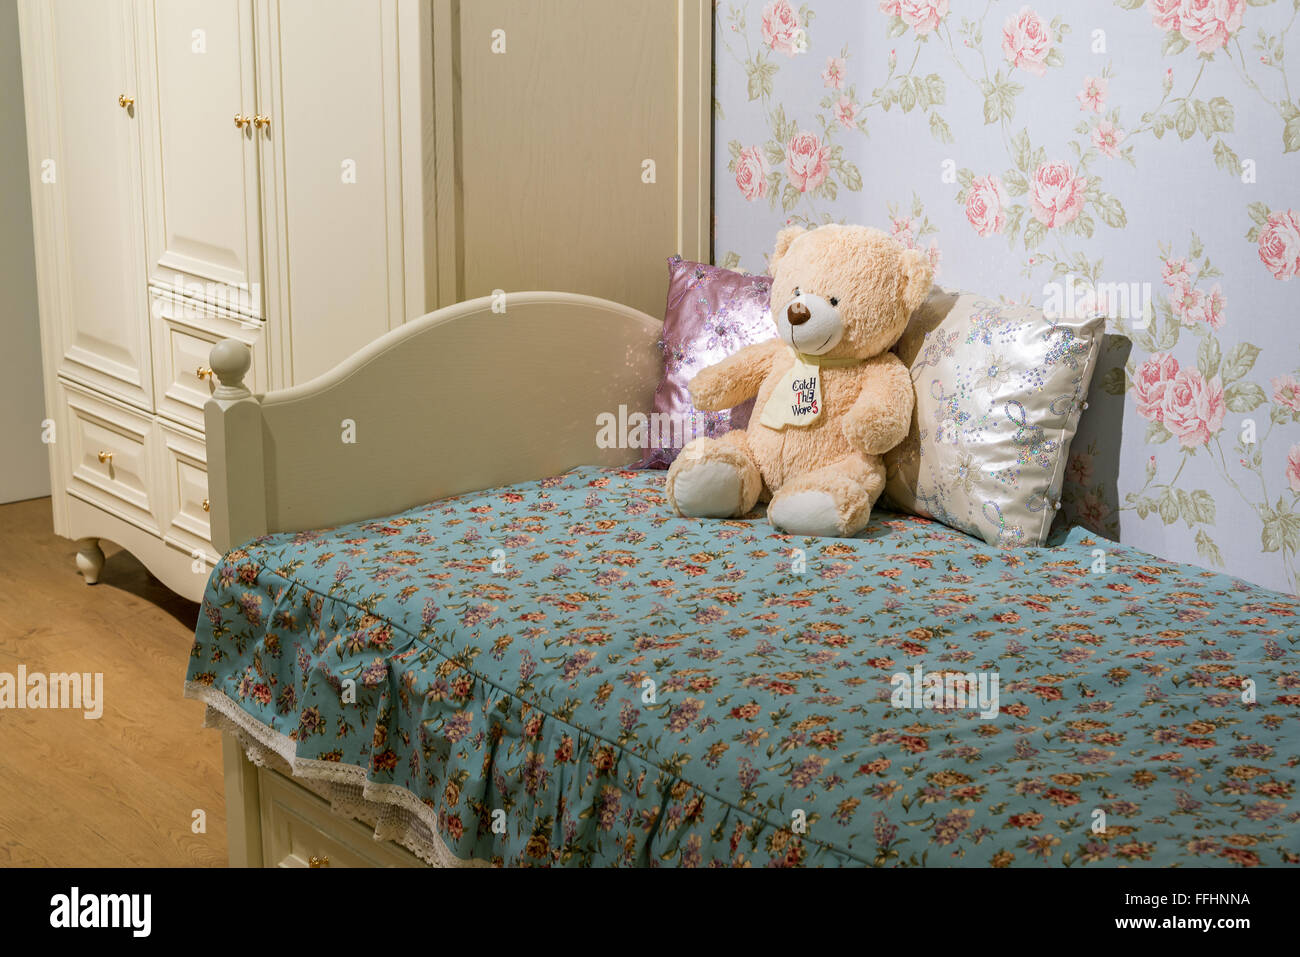 Dettaglio delle camere da letto per ragazze con un orsacchiotto di peluche Foto Stock